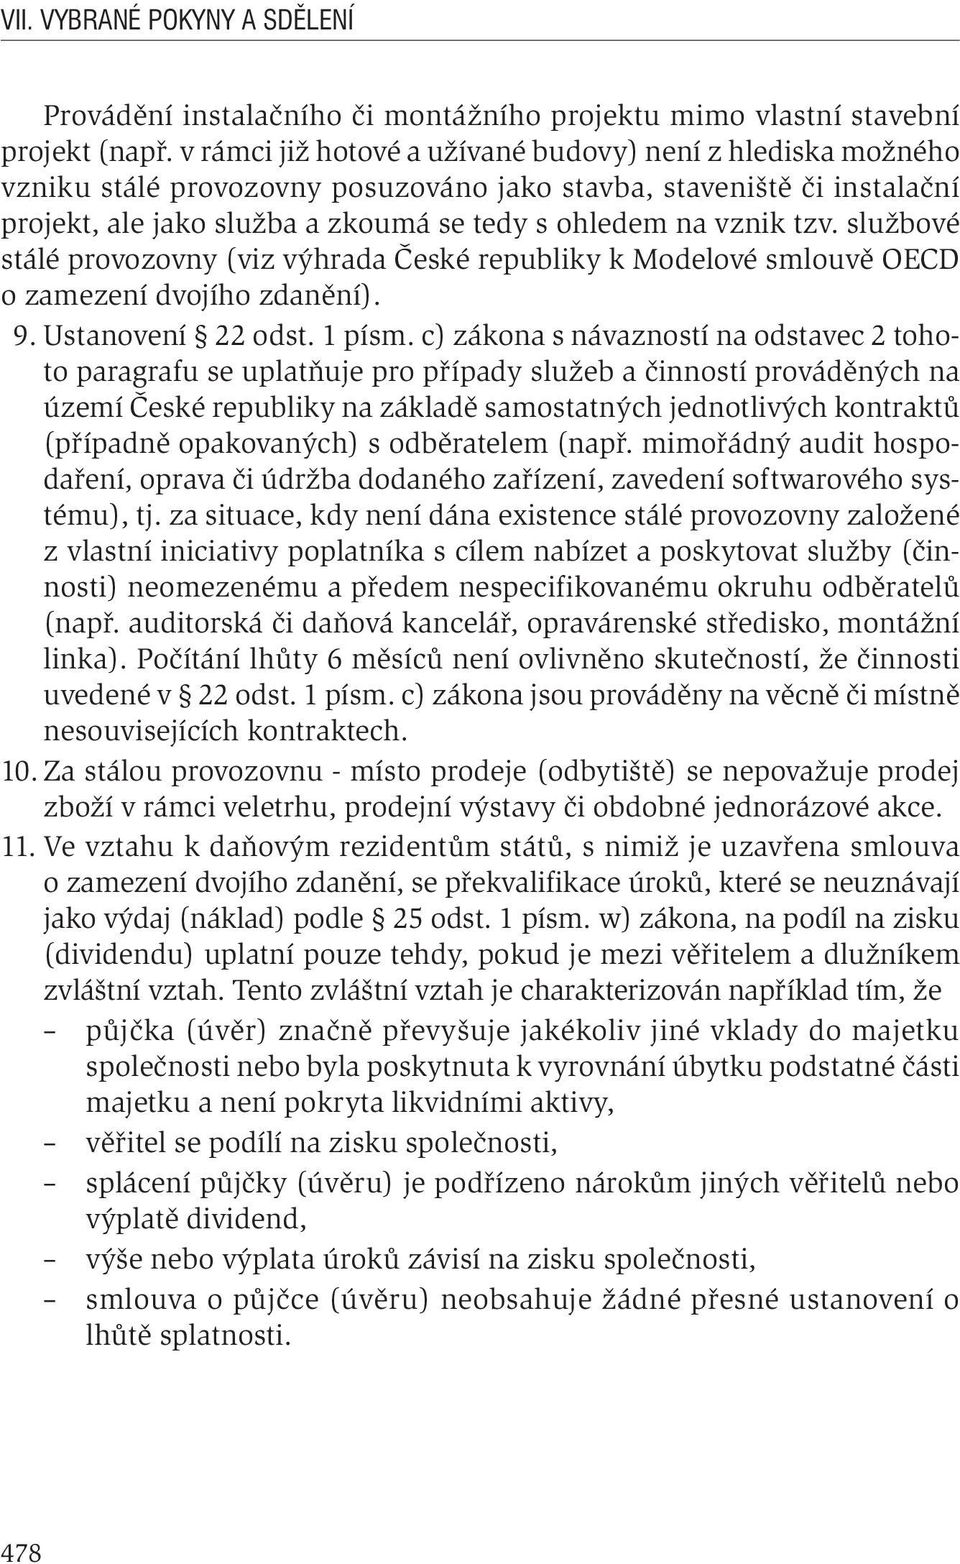 službové stálé provozovny (viz výhrada České republiky k Modelové smlouvě OECD o zamezení dvojího zdanění). 9. Ustanovení 22 odst. 1 písm.